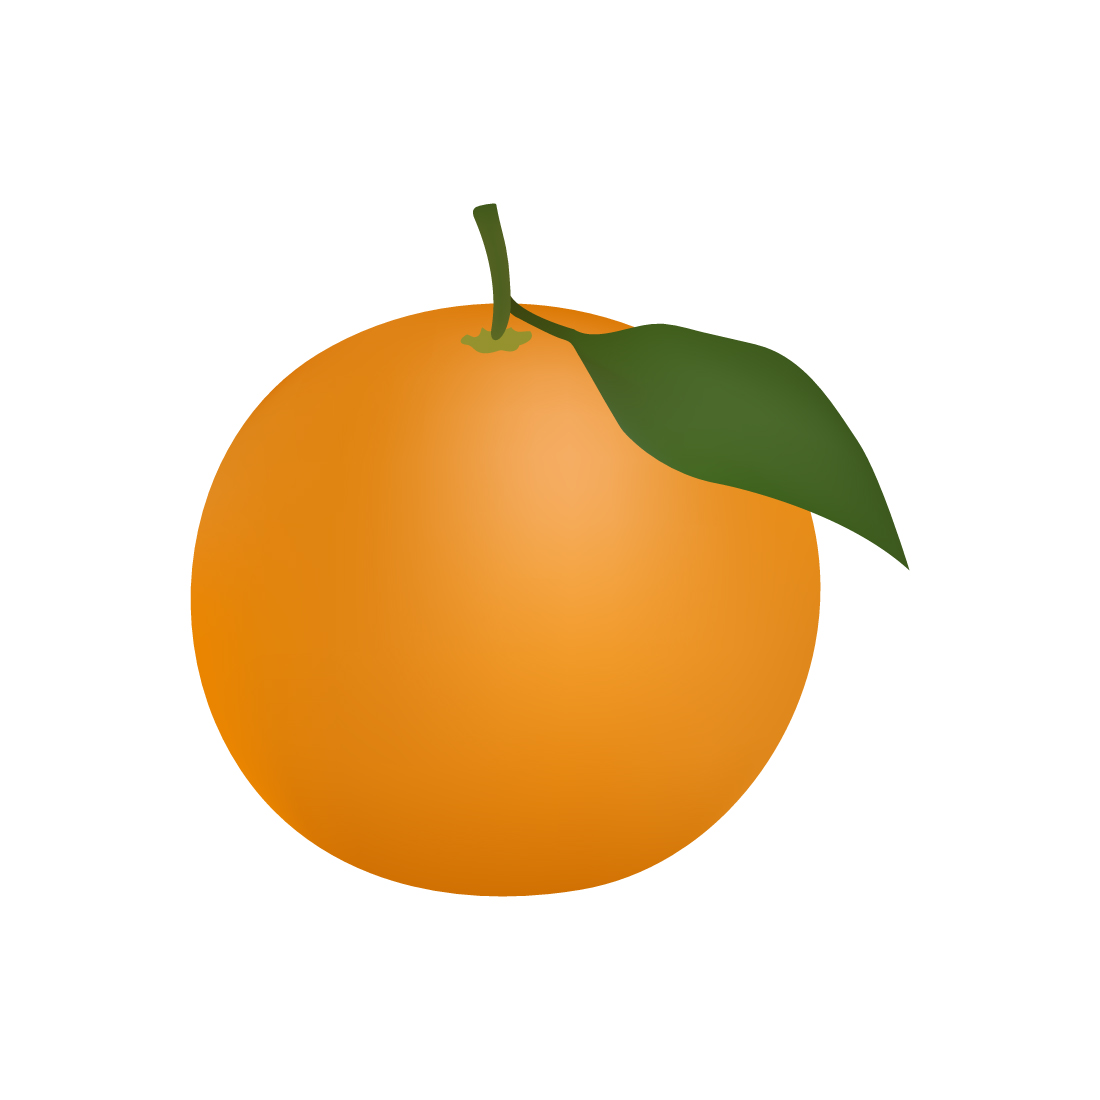 Orange Illustration On White Background cover image.